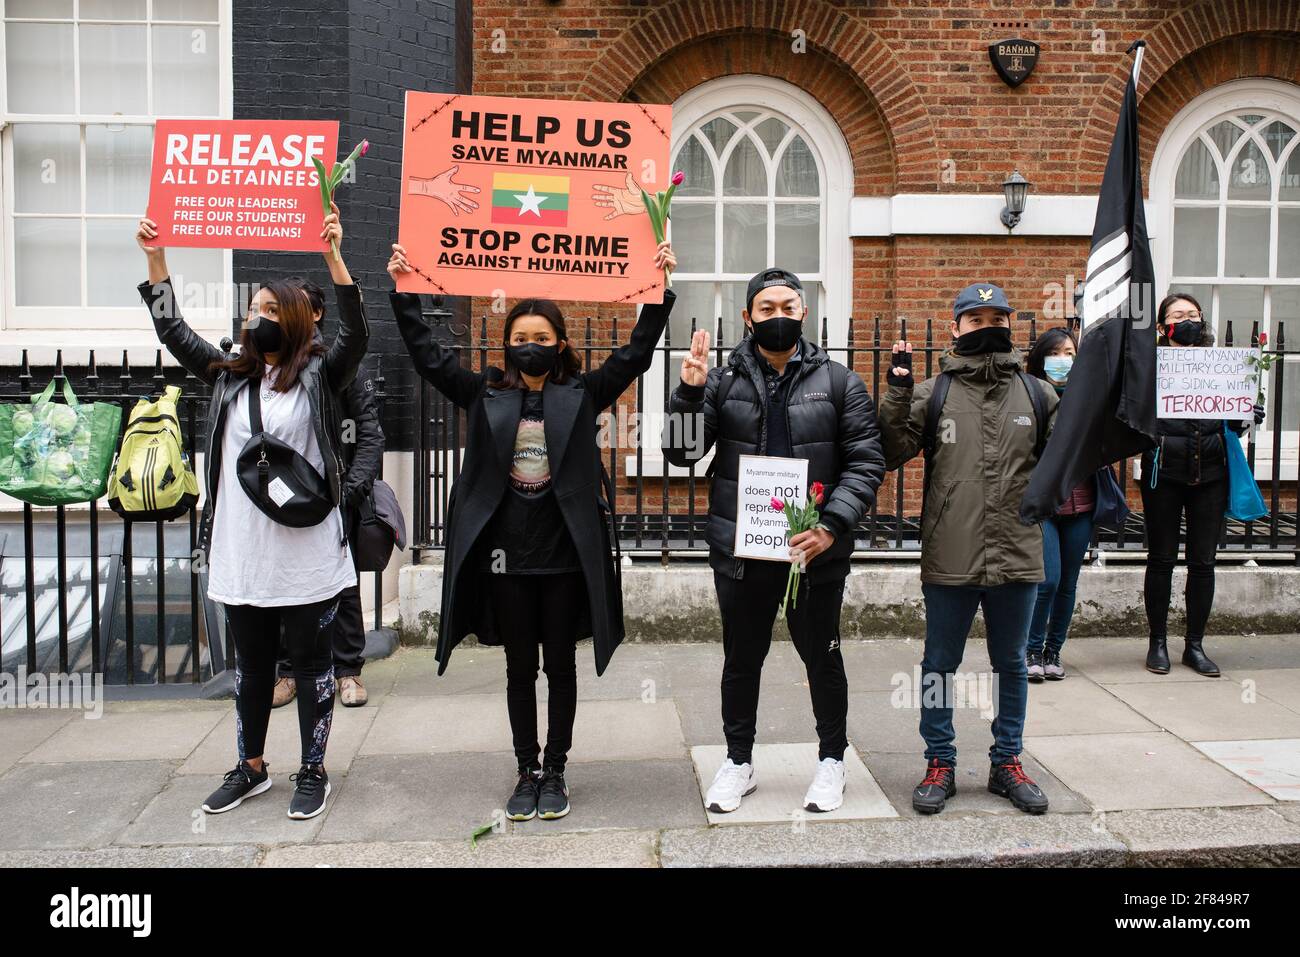 Londres, Royaume-Uni. 10 avril 2021. Manifestation à l'extérieur de l'ambassade du Myanmar en solidarité avec le peuple du Myanmar (Birmanie). Des manifestants tiennent des panneaux. Banque D'Images